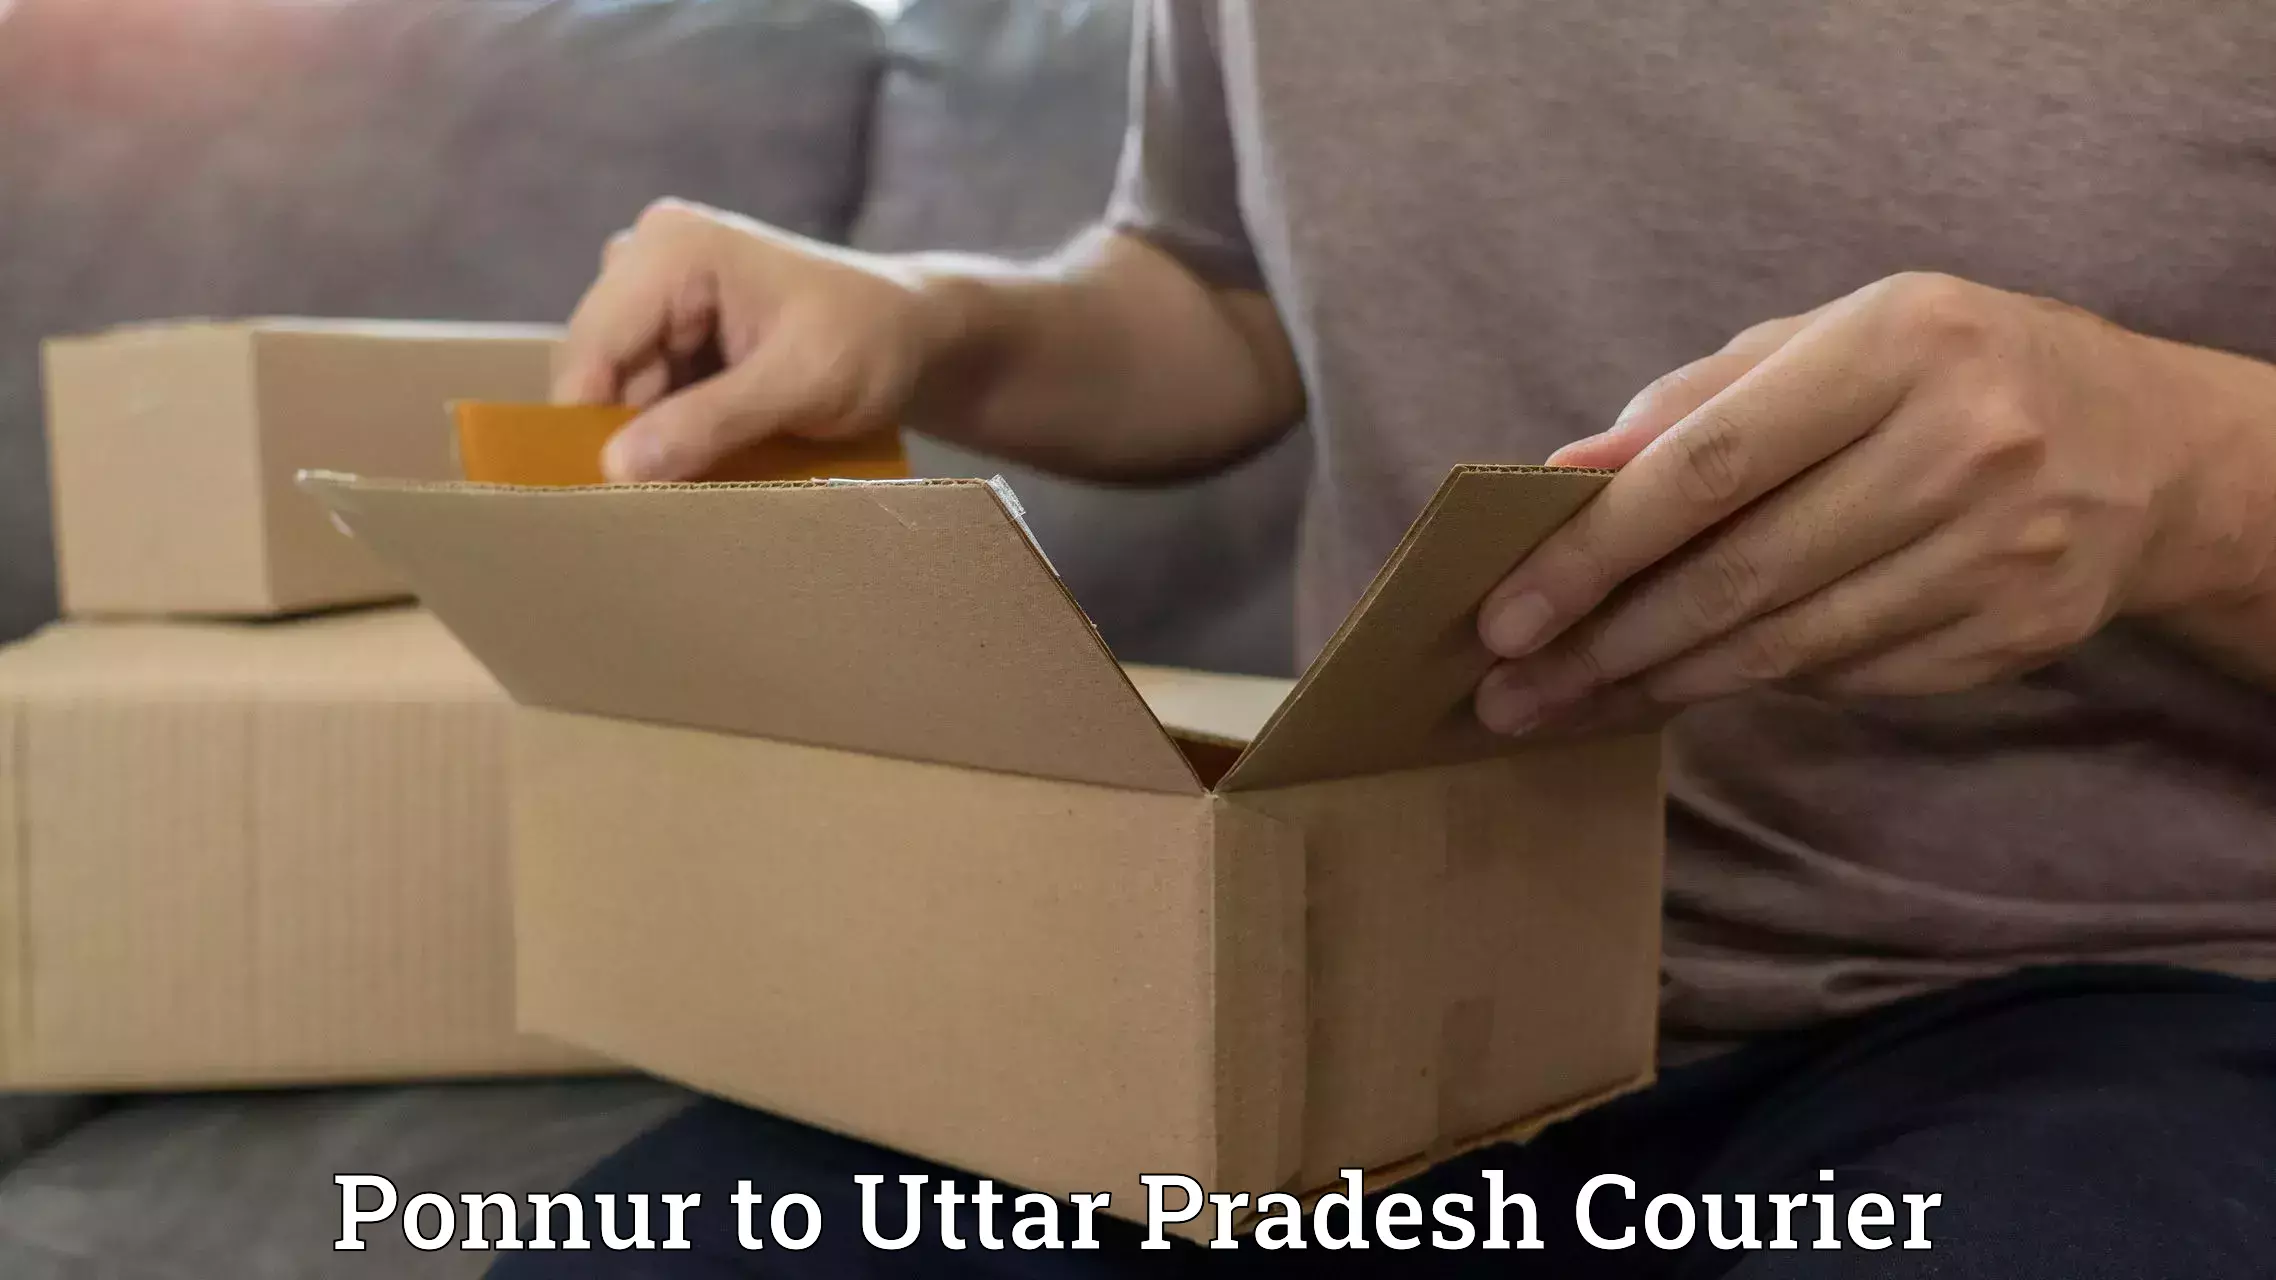 Special handling courier Ponnur to Aligarh Muslim University